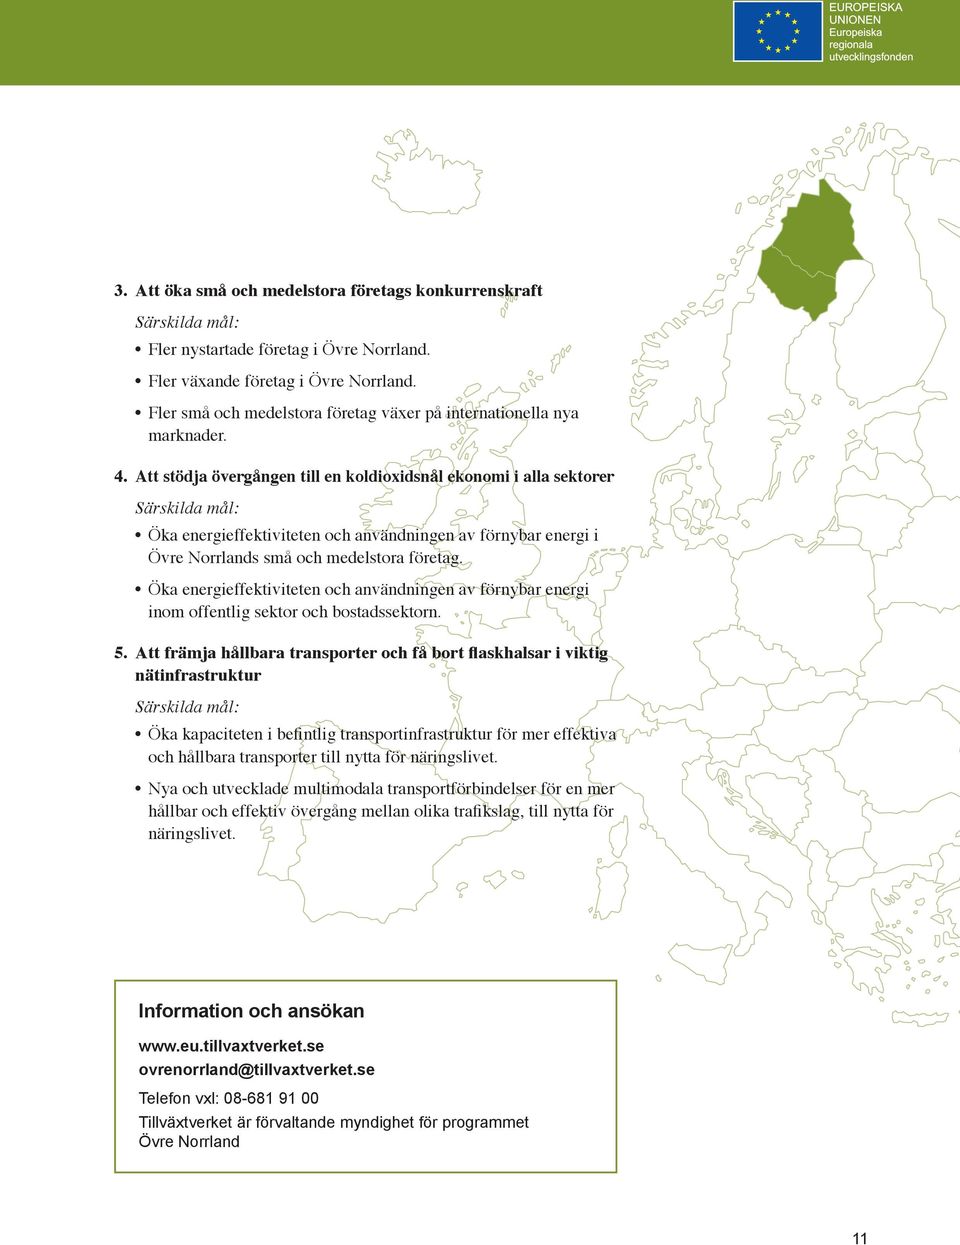 Att stödja övergången till en koldioxidsnål ekonomi i alla sektorer Särskilda mål: Öka energieffektiviteten och användningen av förnybar energi i Övre Norrlands små och medelstora företag.